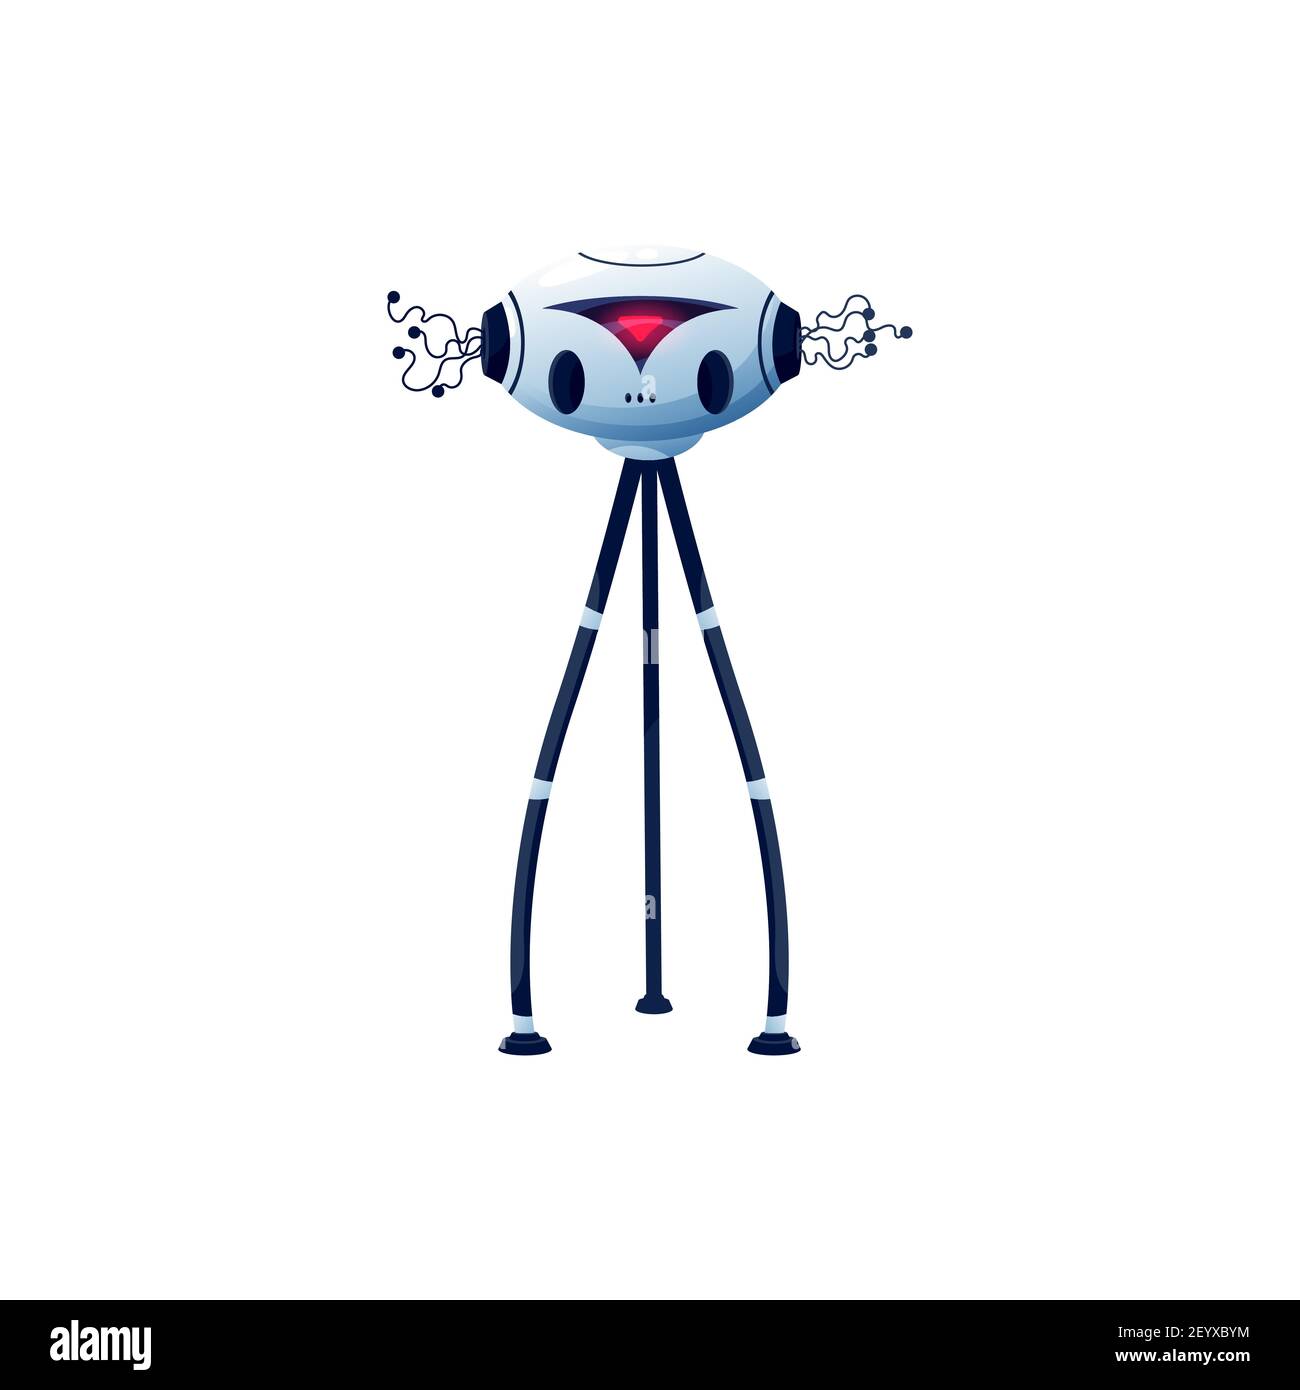 Cartoon Roboter Vektor Cyborg Charakter. Künstliche Intelligenz Spielzeug oder bot mit digitalen roten Glow, flexible lange Beine an Saugern und Tentakeln auf Kopf, Stock Vektor